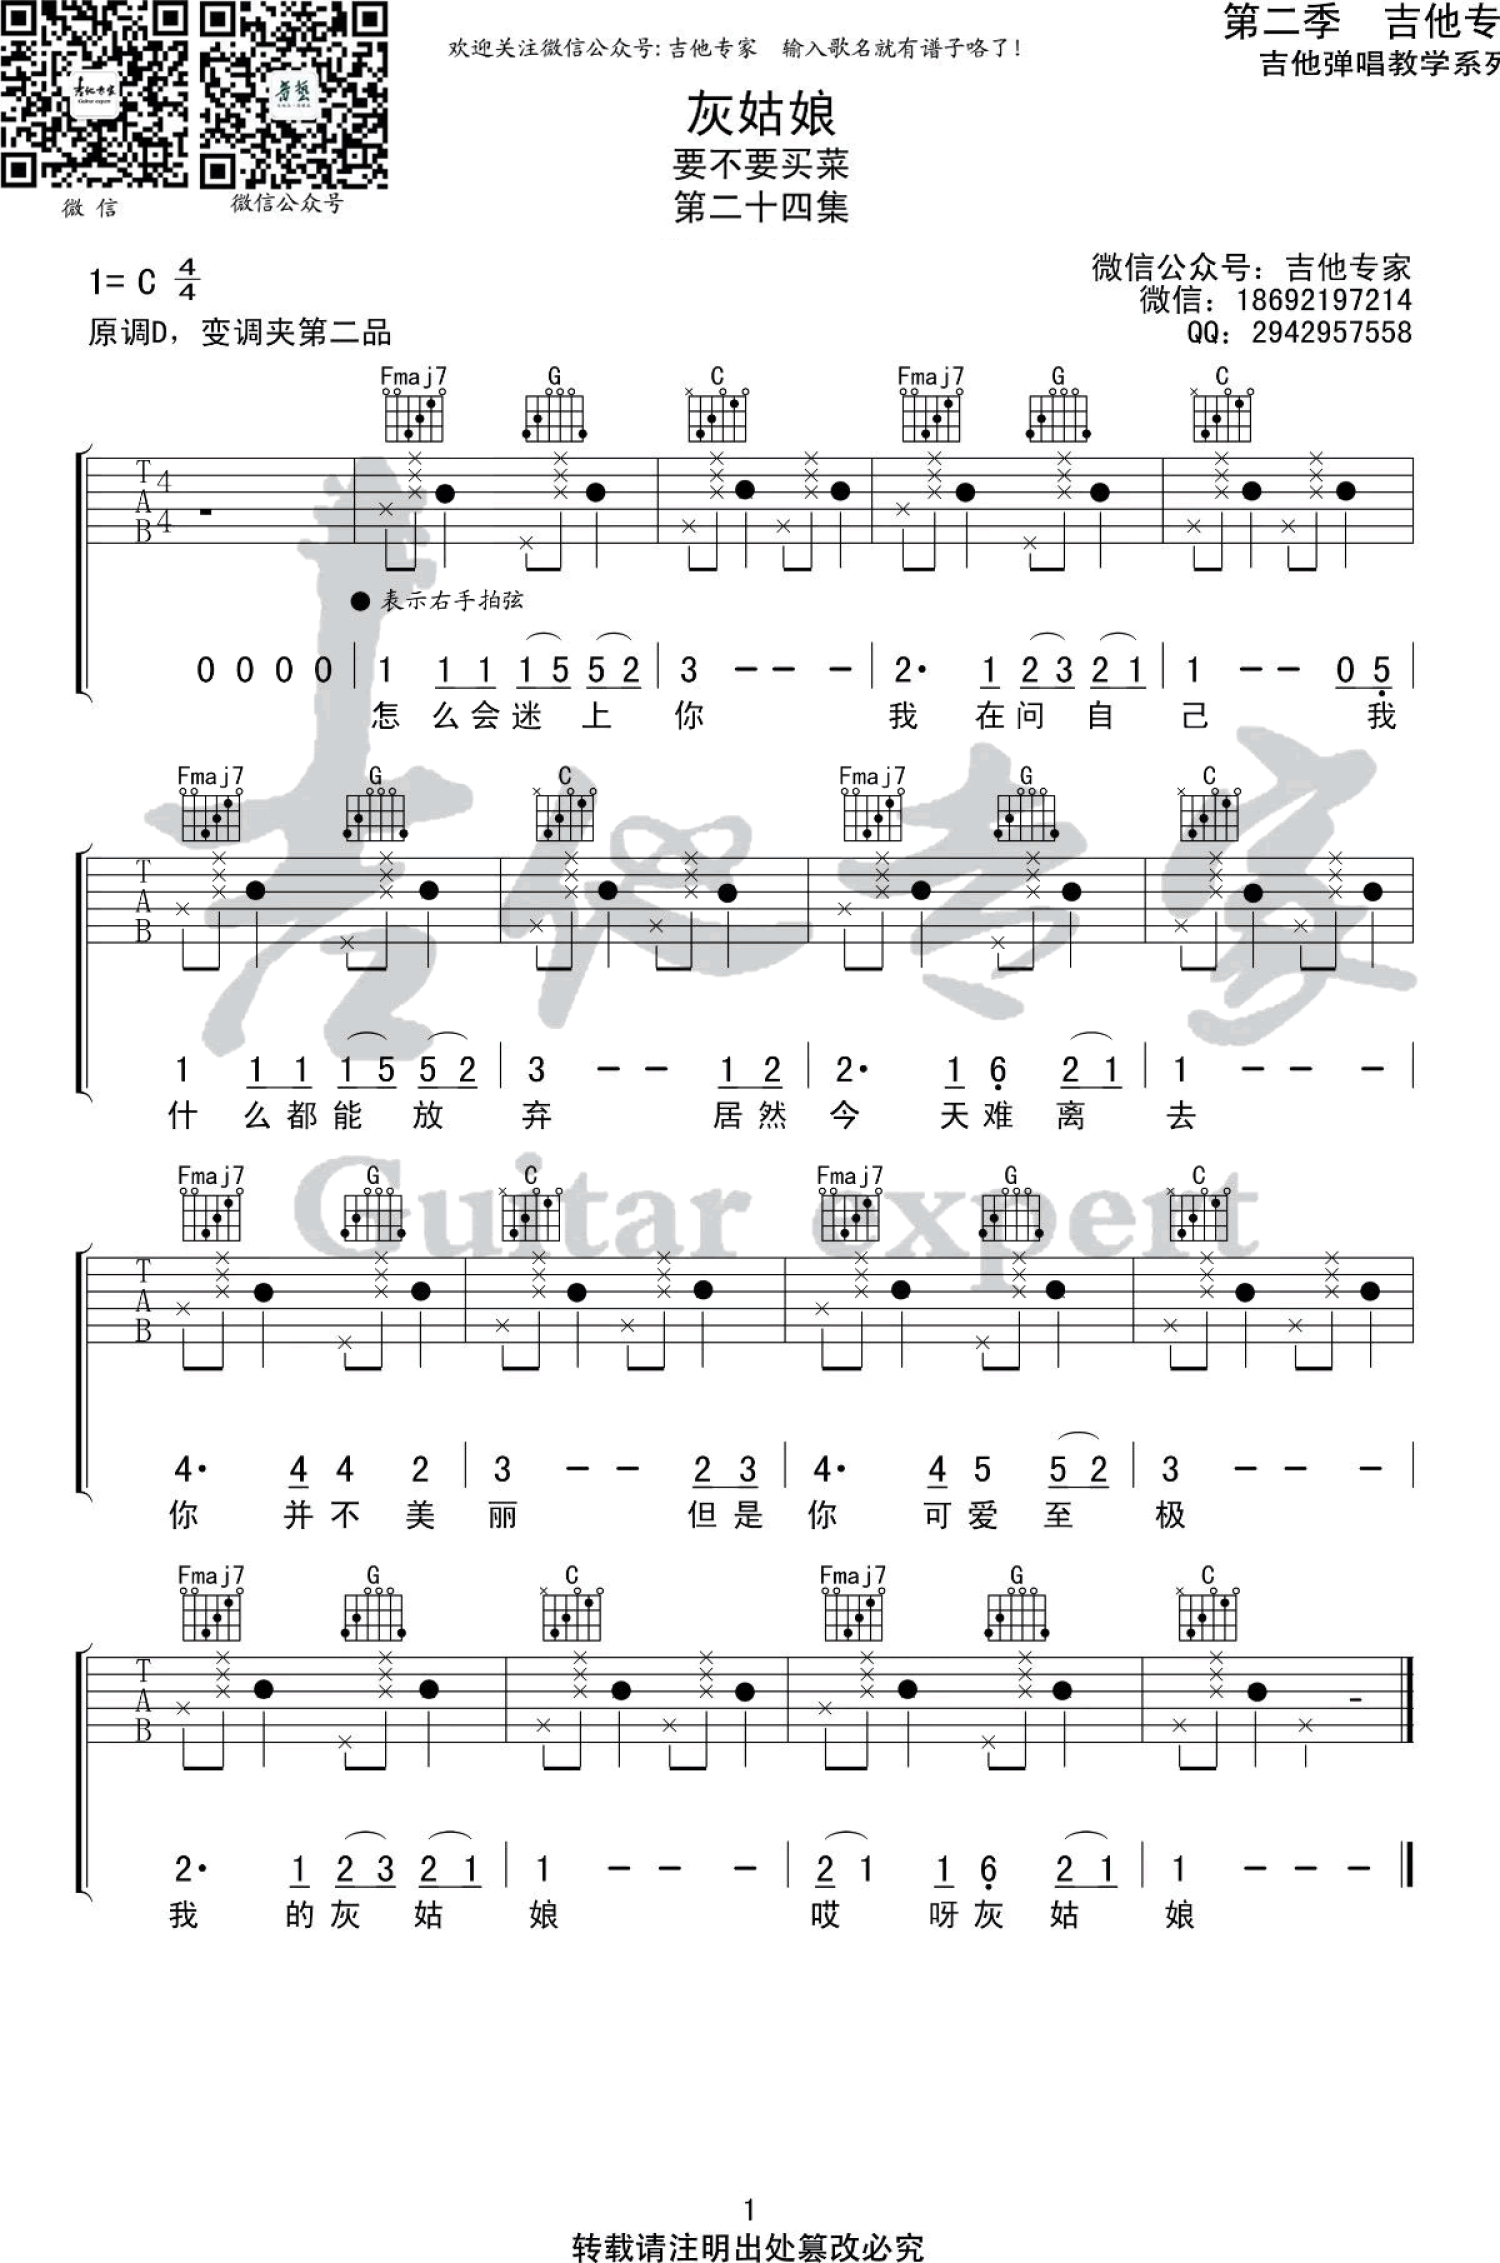 简易版分解节奏型《晚安姑娘》吉他谱 - 海先生C调编配和弦谱(弹唱谱) - 原调D调 - 国语版初级吉他谱 - 易谱库